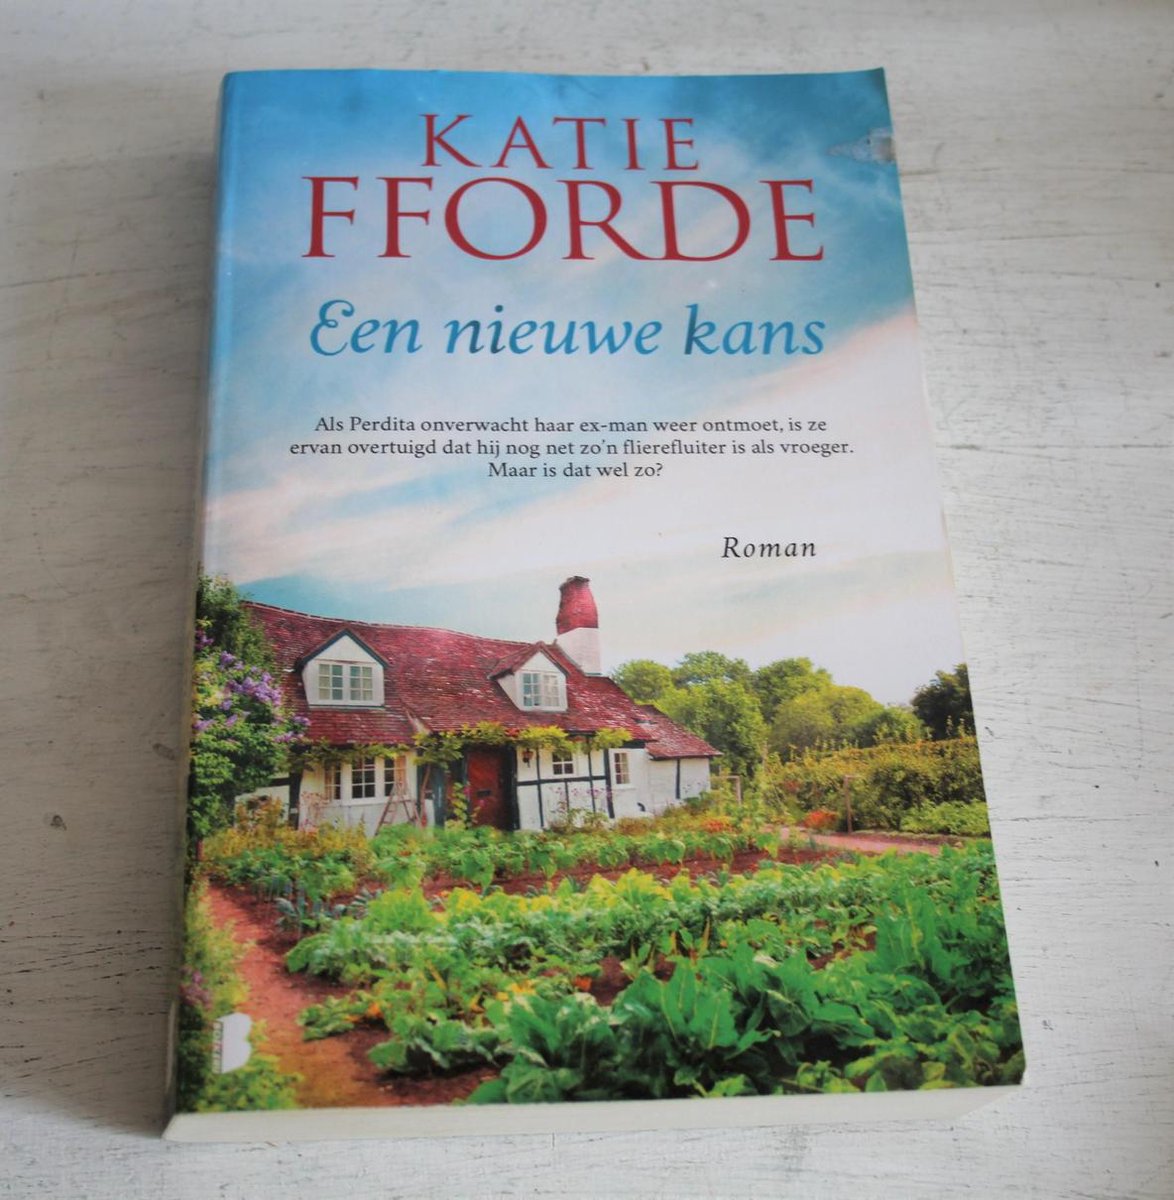 Katie Fforbe - Een nieuwe kans